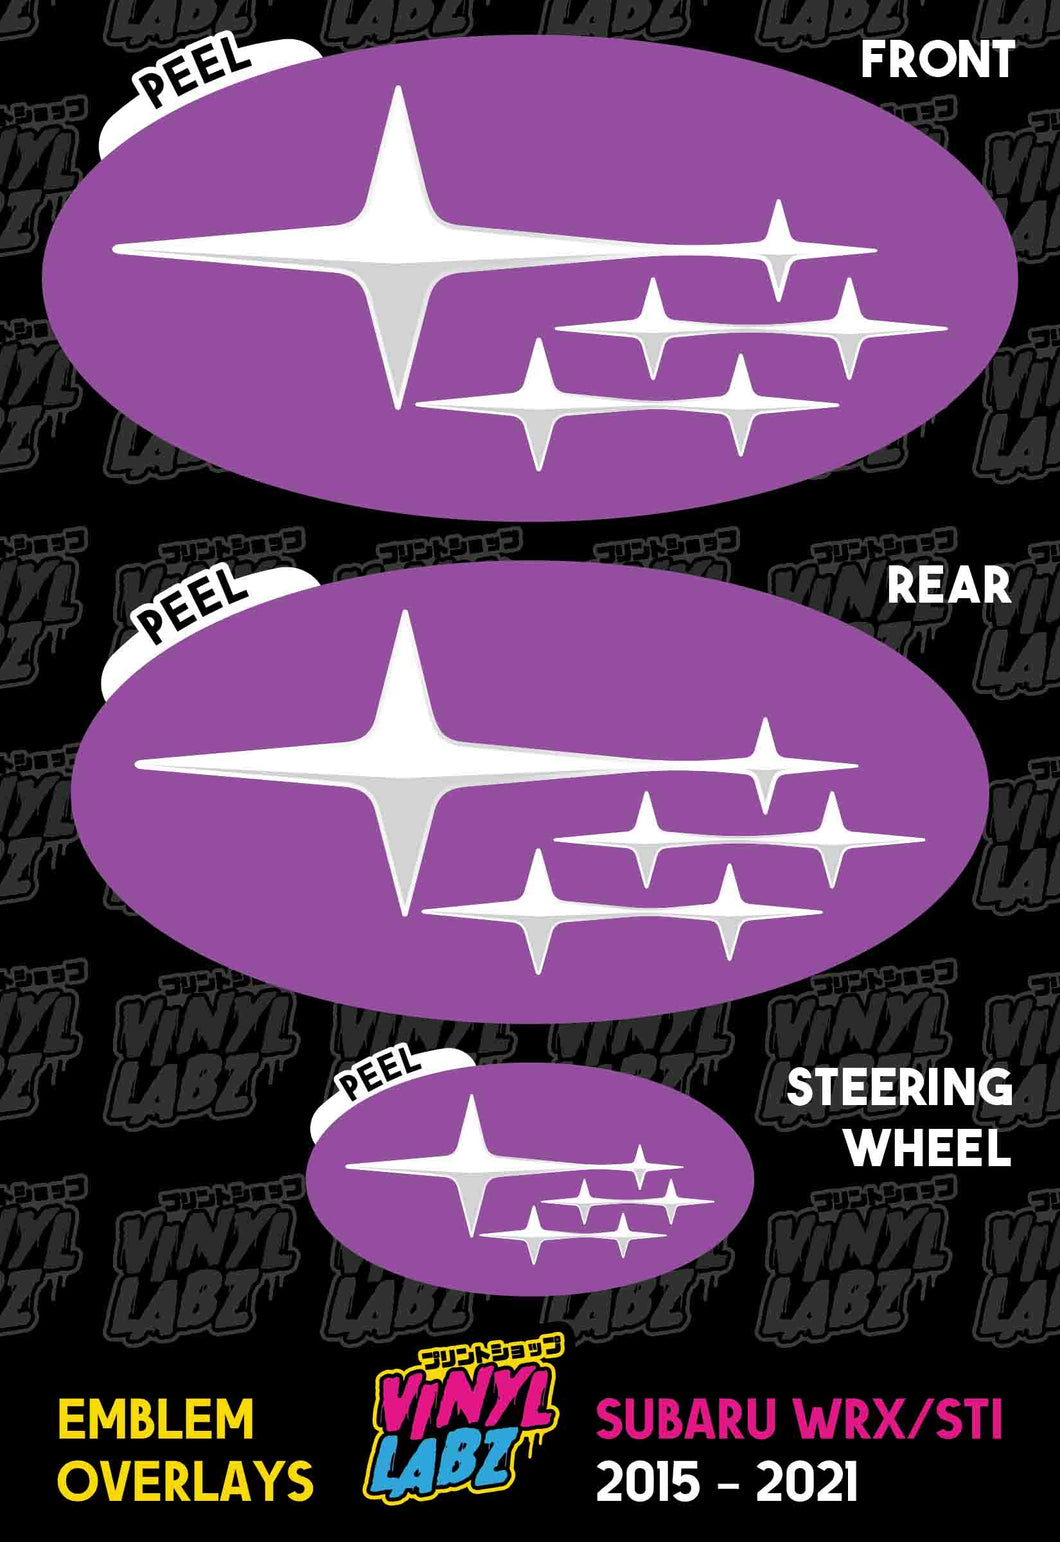 Subaru Vinyl Emblem Overlay (Purple and White) | 2015-2021 Subaru WRX/STI